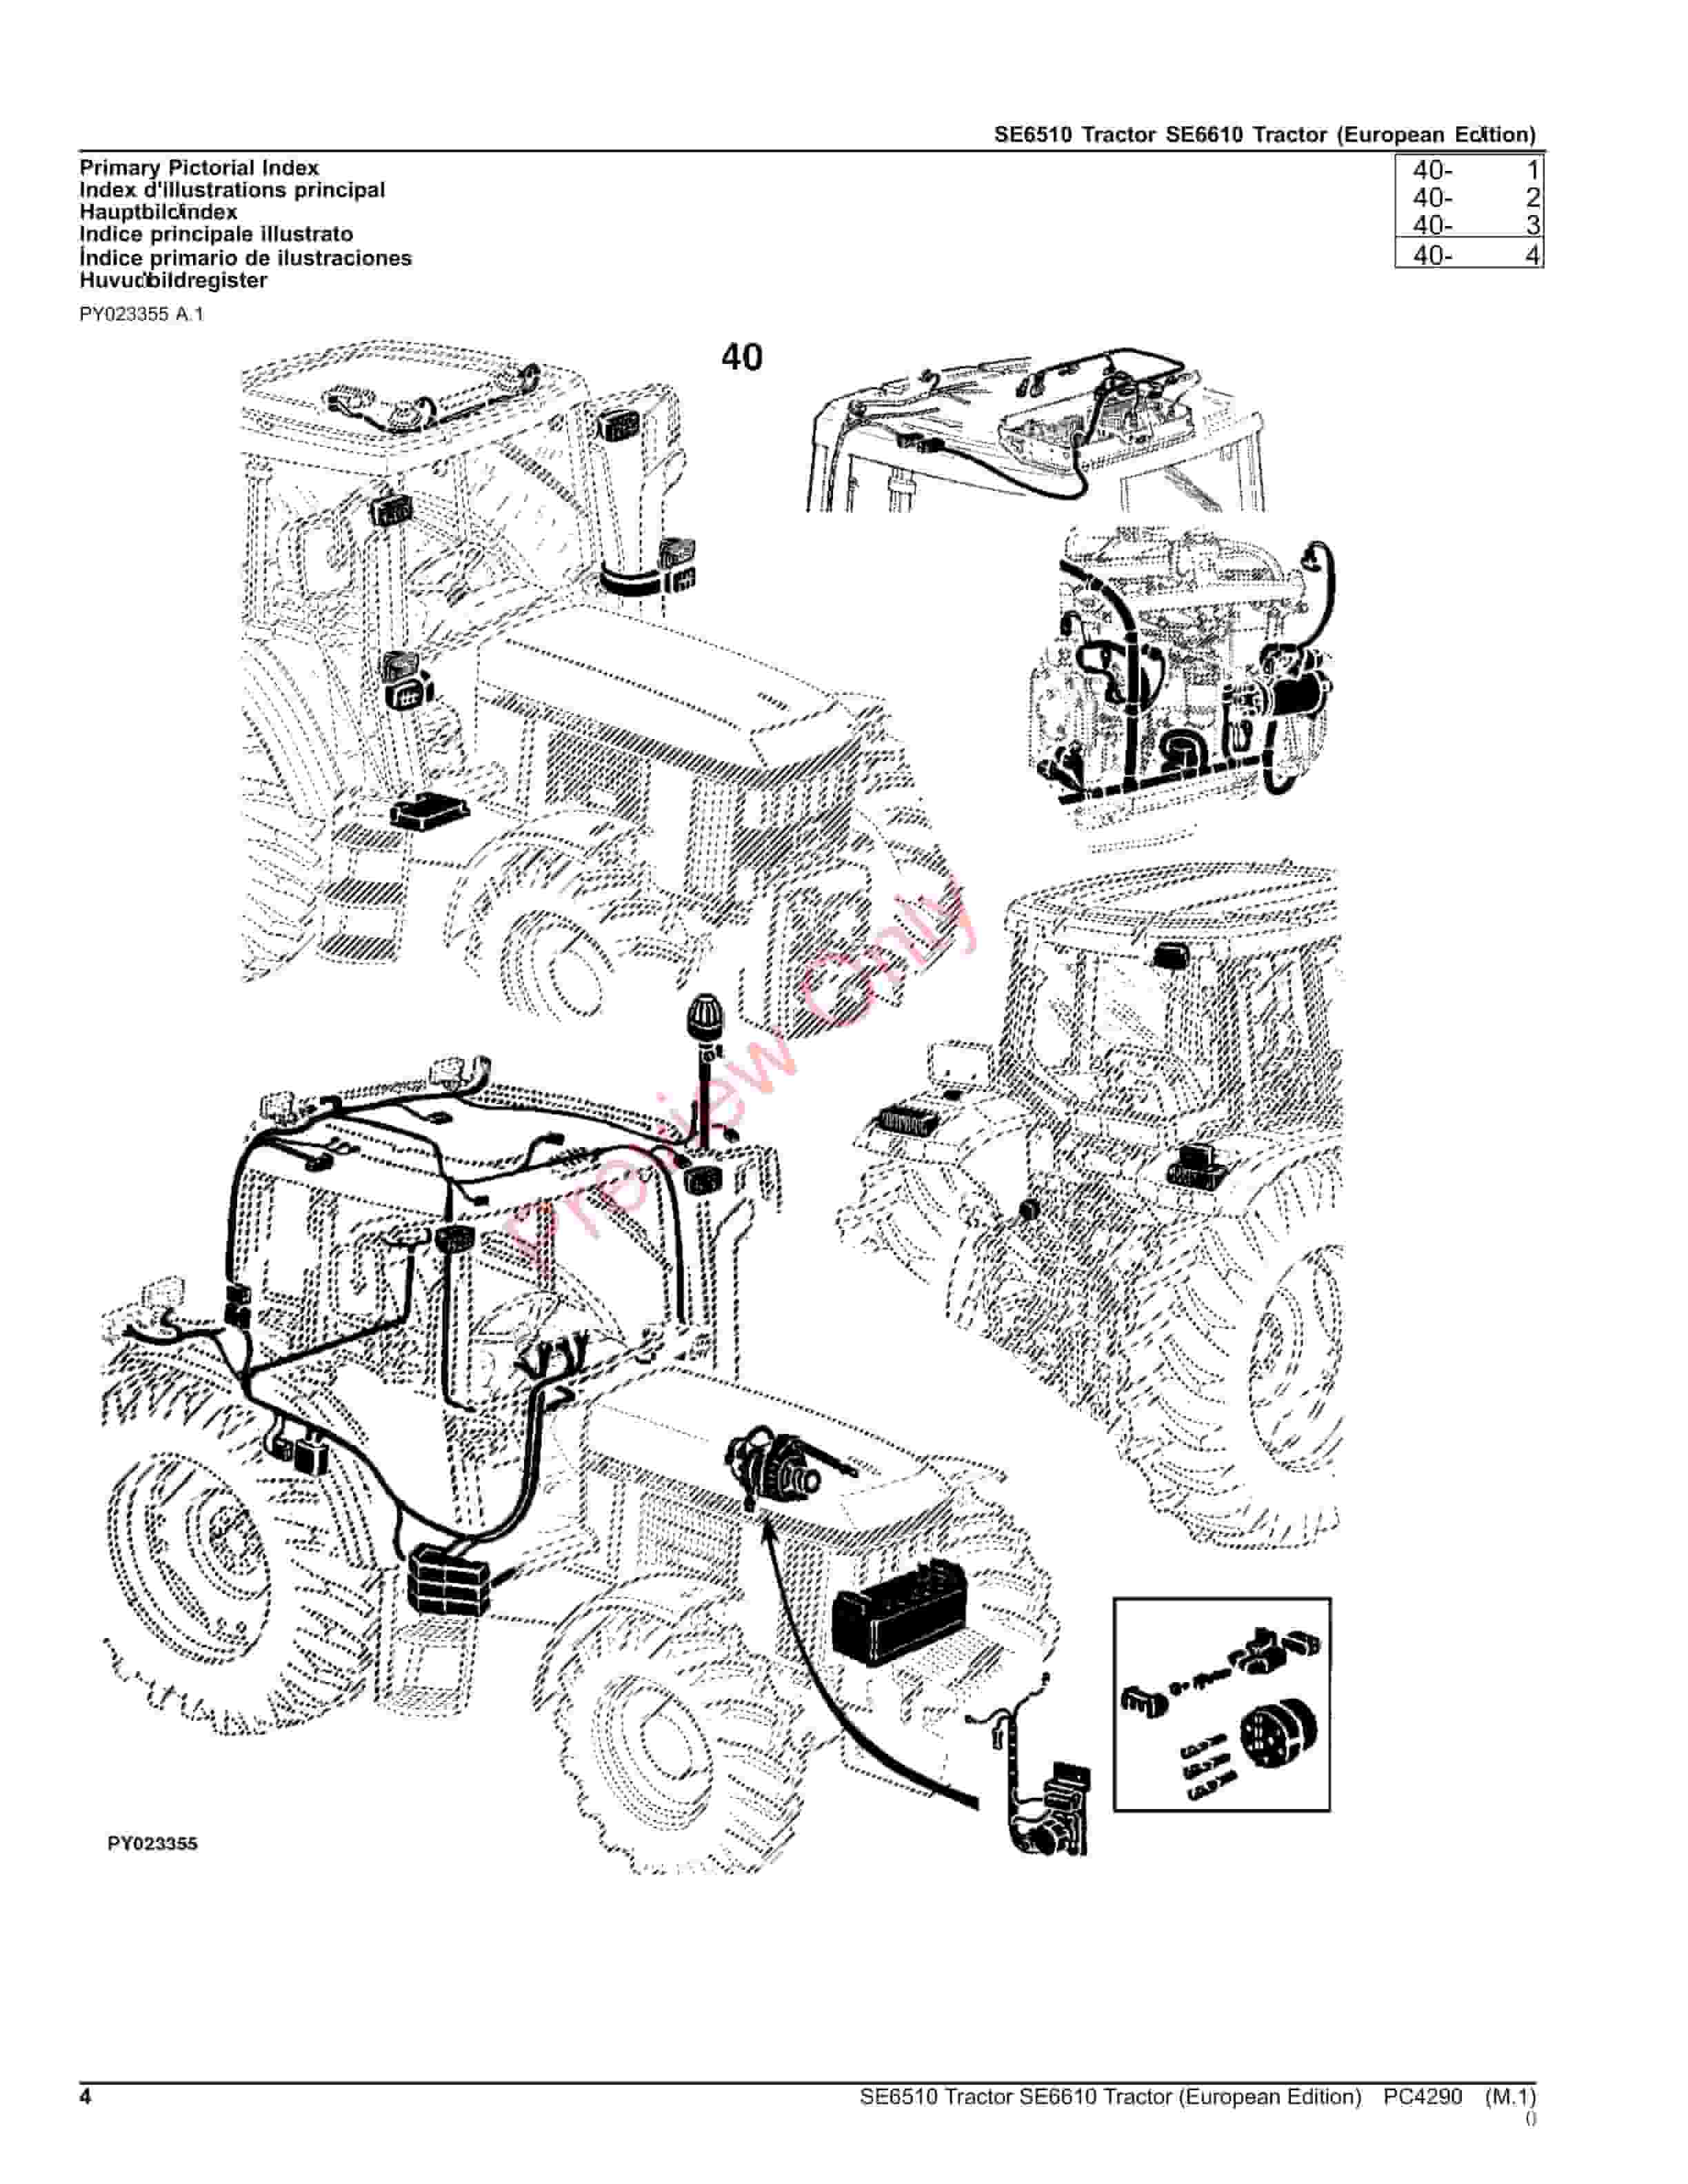 John Deere SE6510, SE6610 Tractors Parts Catalog PC4290 06AUG23-4